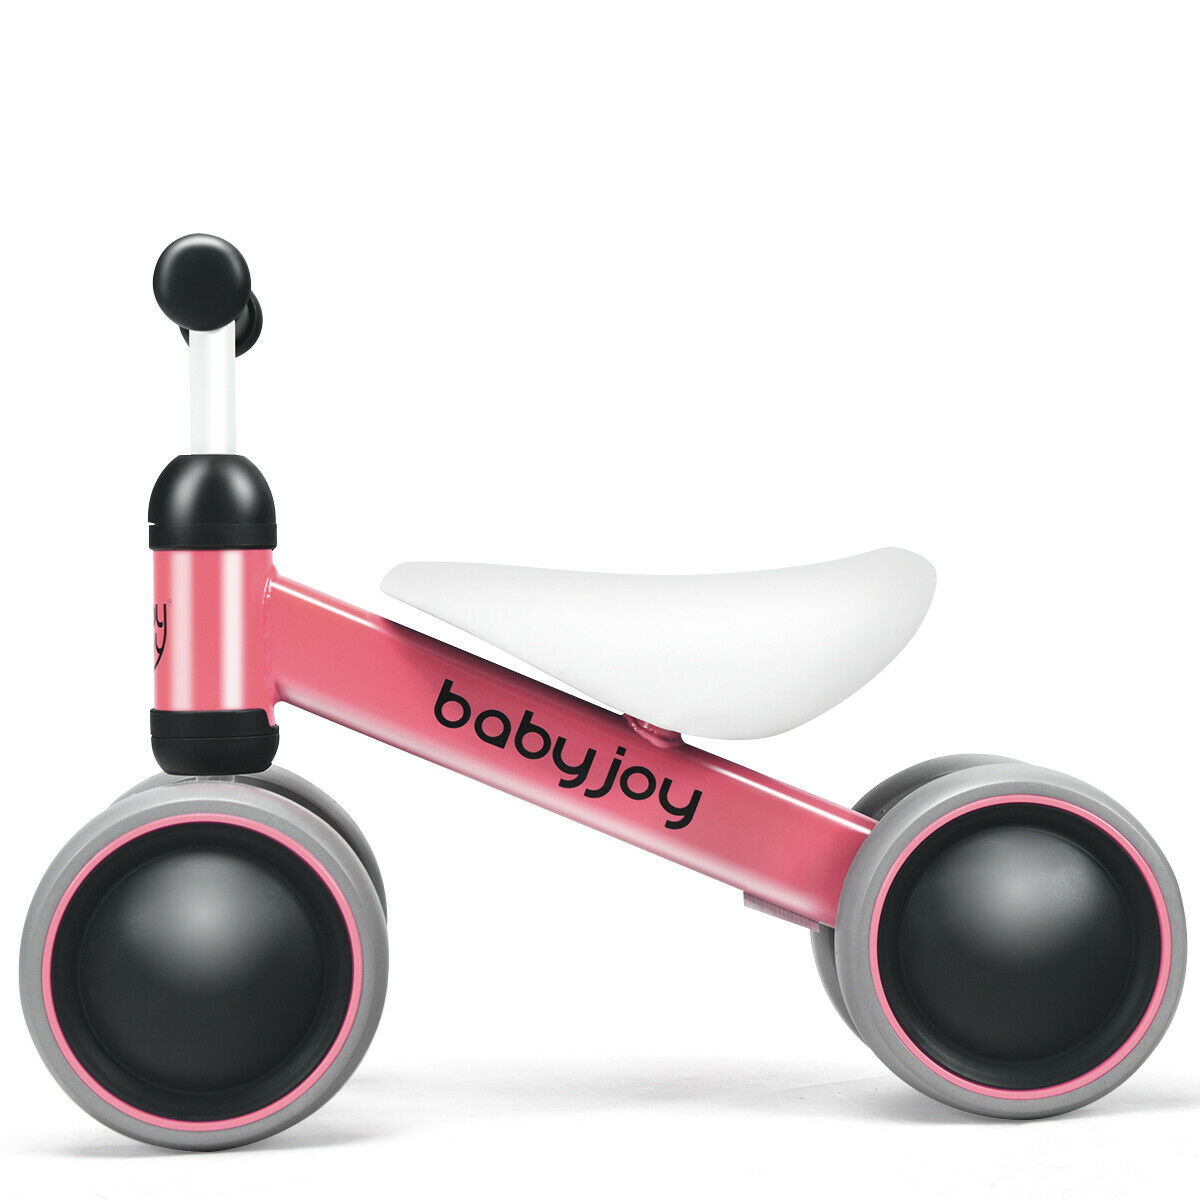 Babyjoy 4 Wheels Baby Balance Bike Children Walker No-Pedal Toddler Toys Rides Pink - image 1 of 10